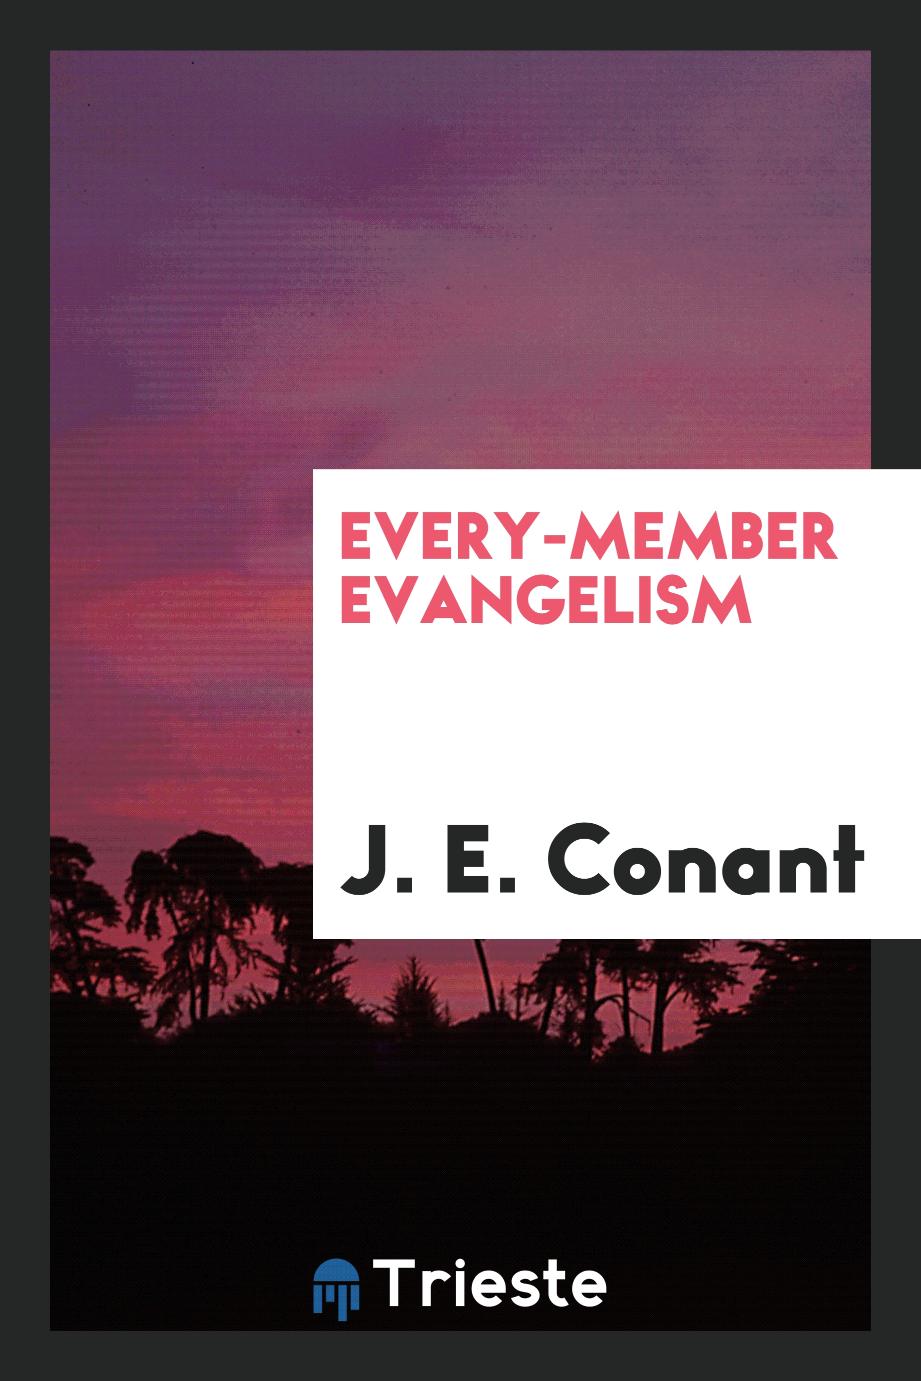 Every-member evangelism